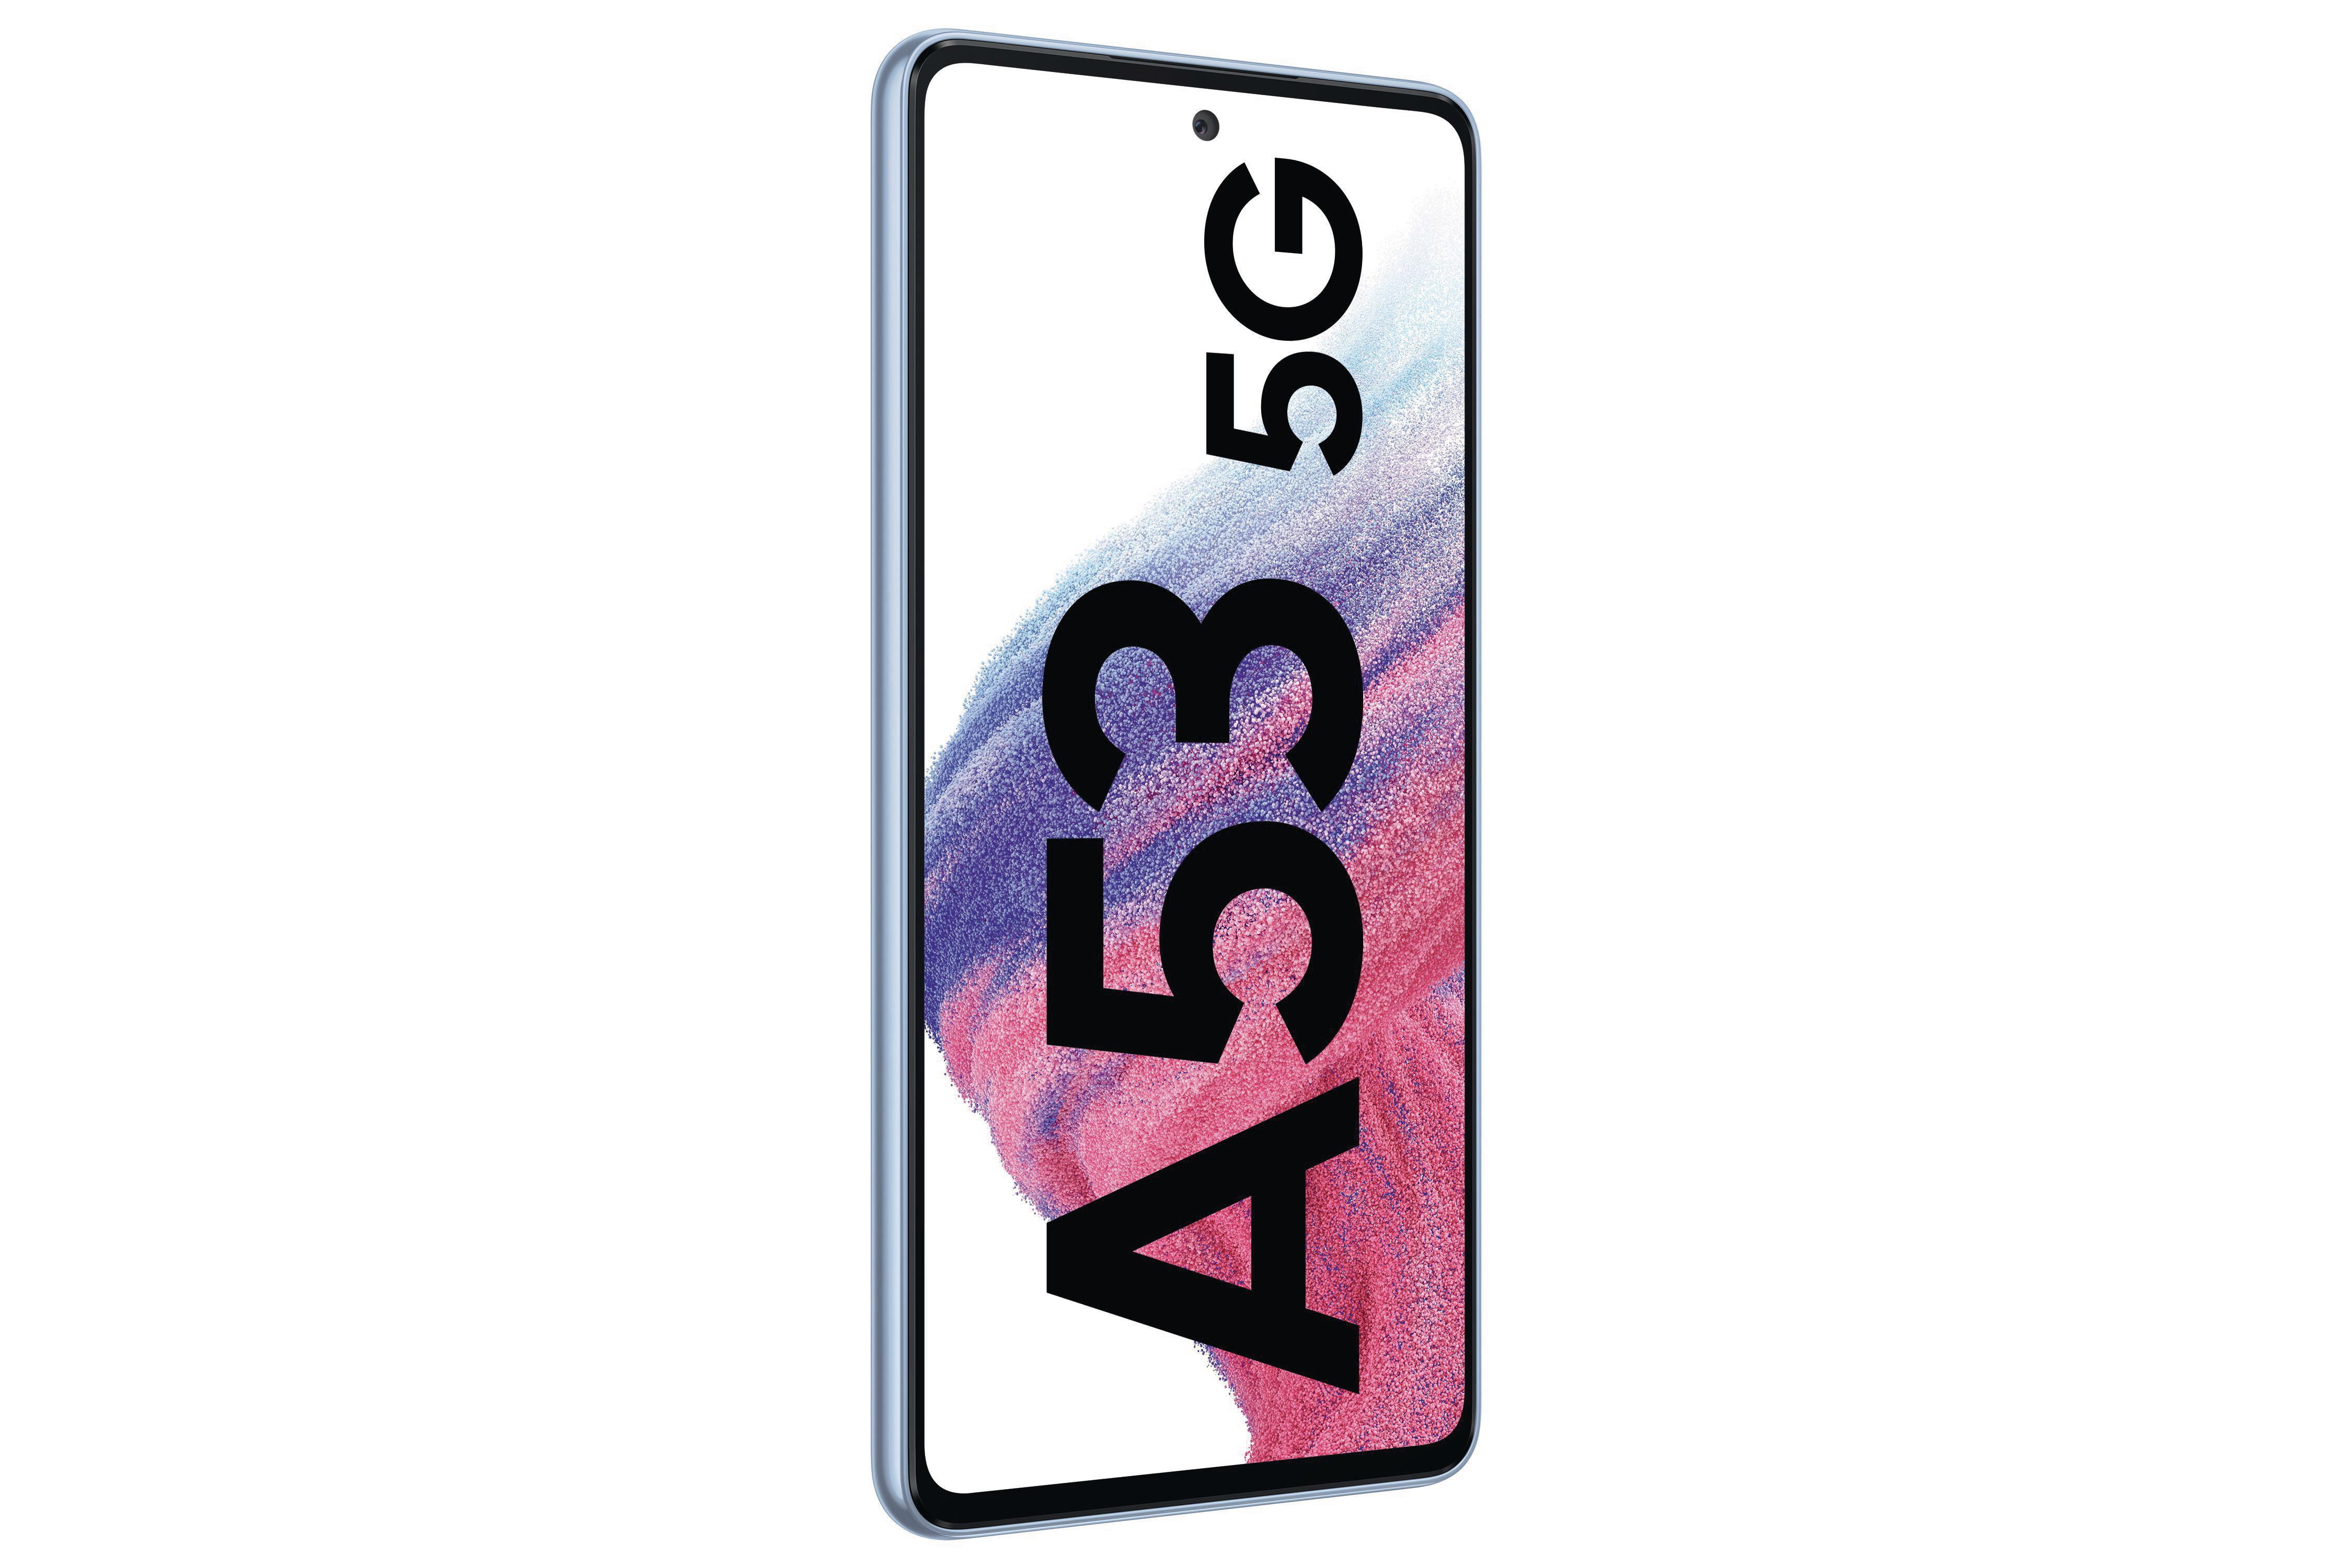 SAMSUNG Galaxy A53 256 SIM 5G GB Blue Awesome Dual